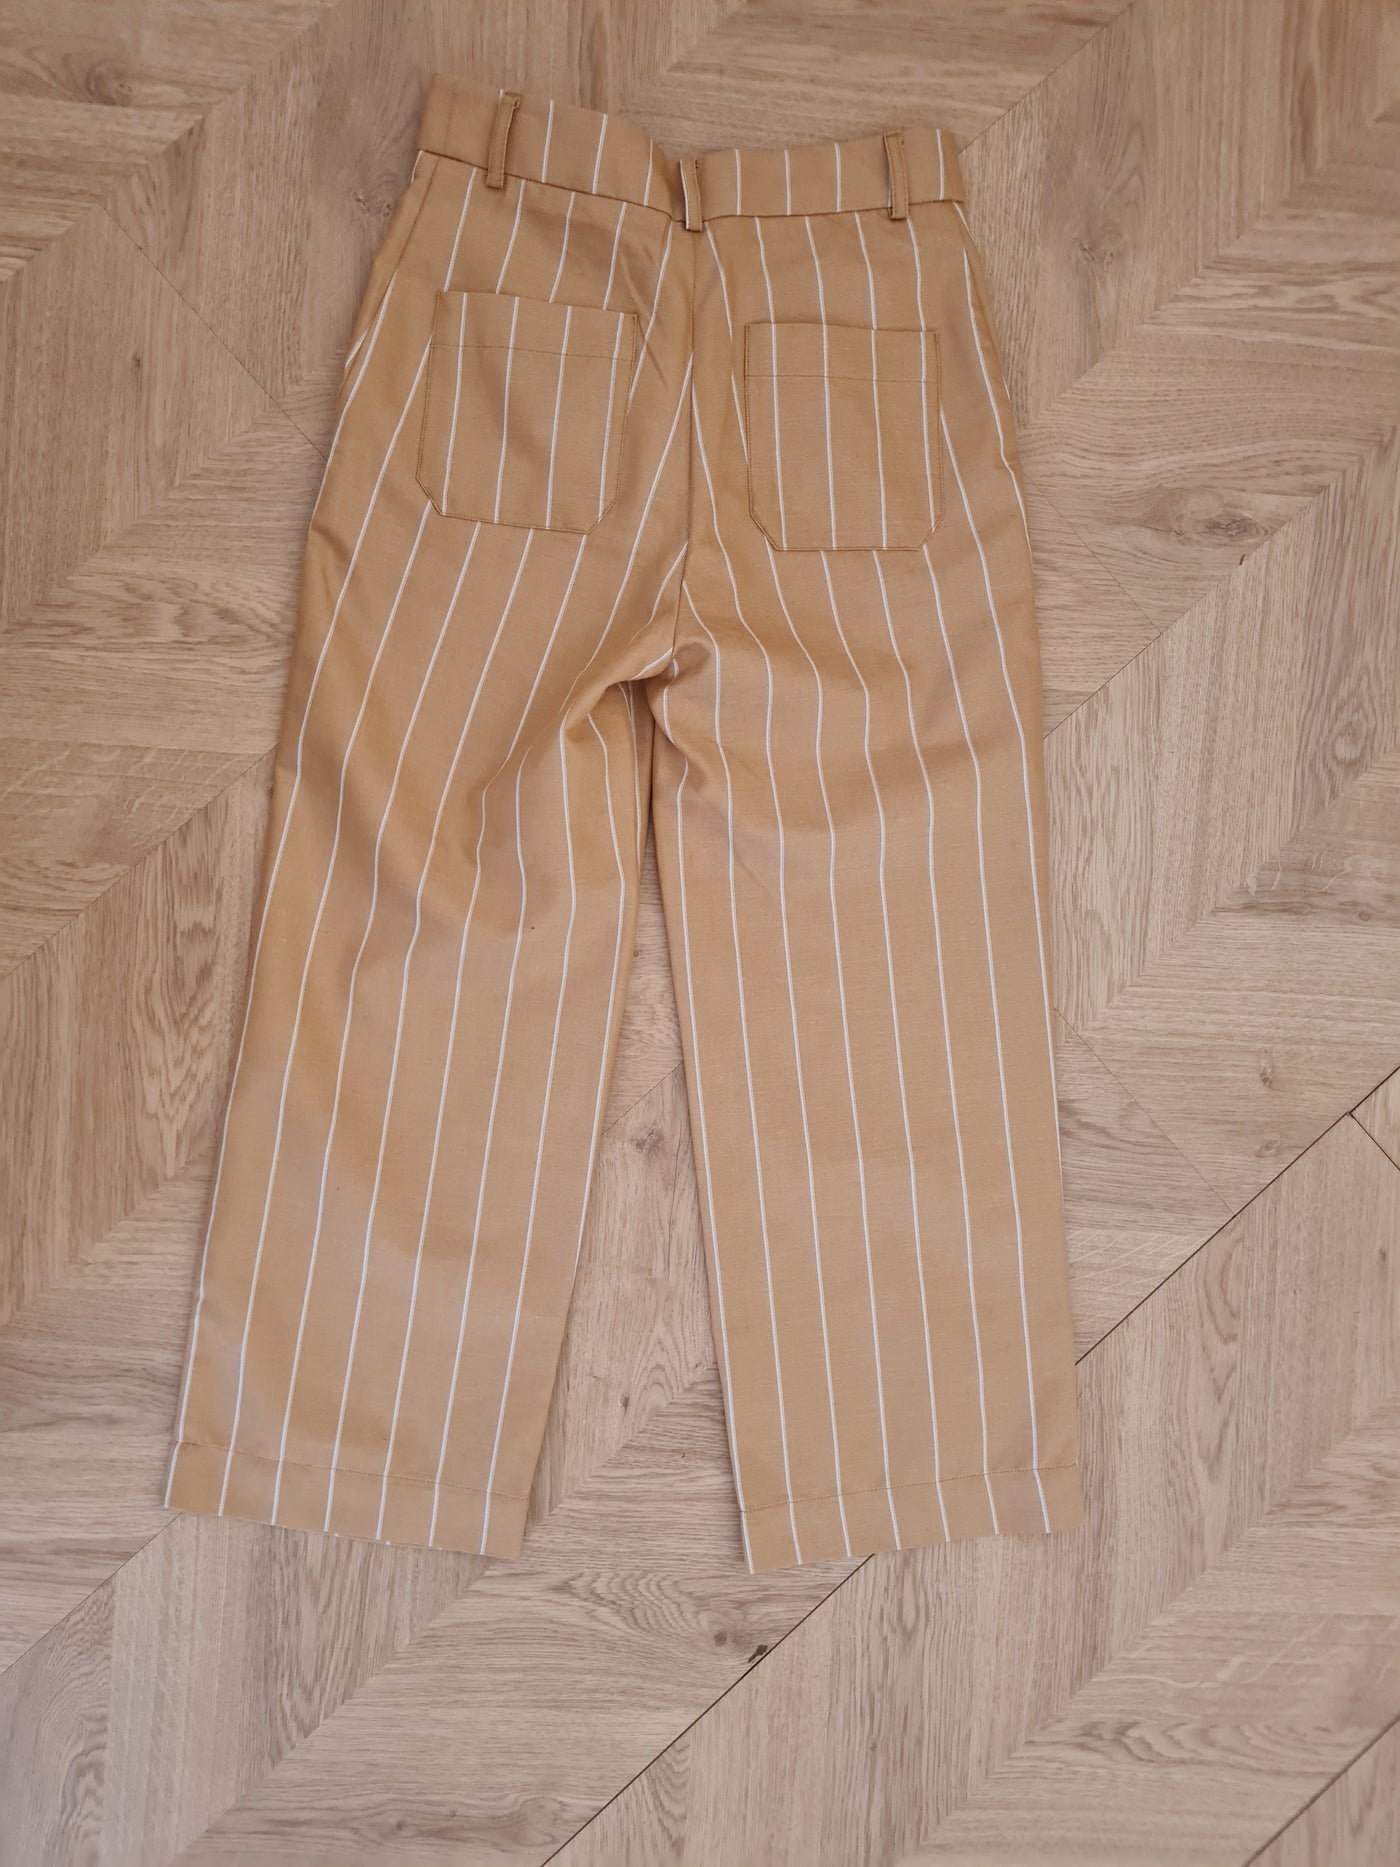 Tinsels Tan Stripe Crop Trouser Size 8